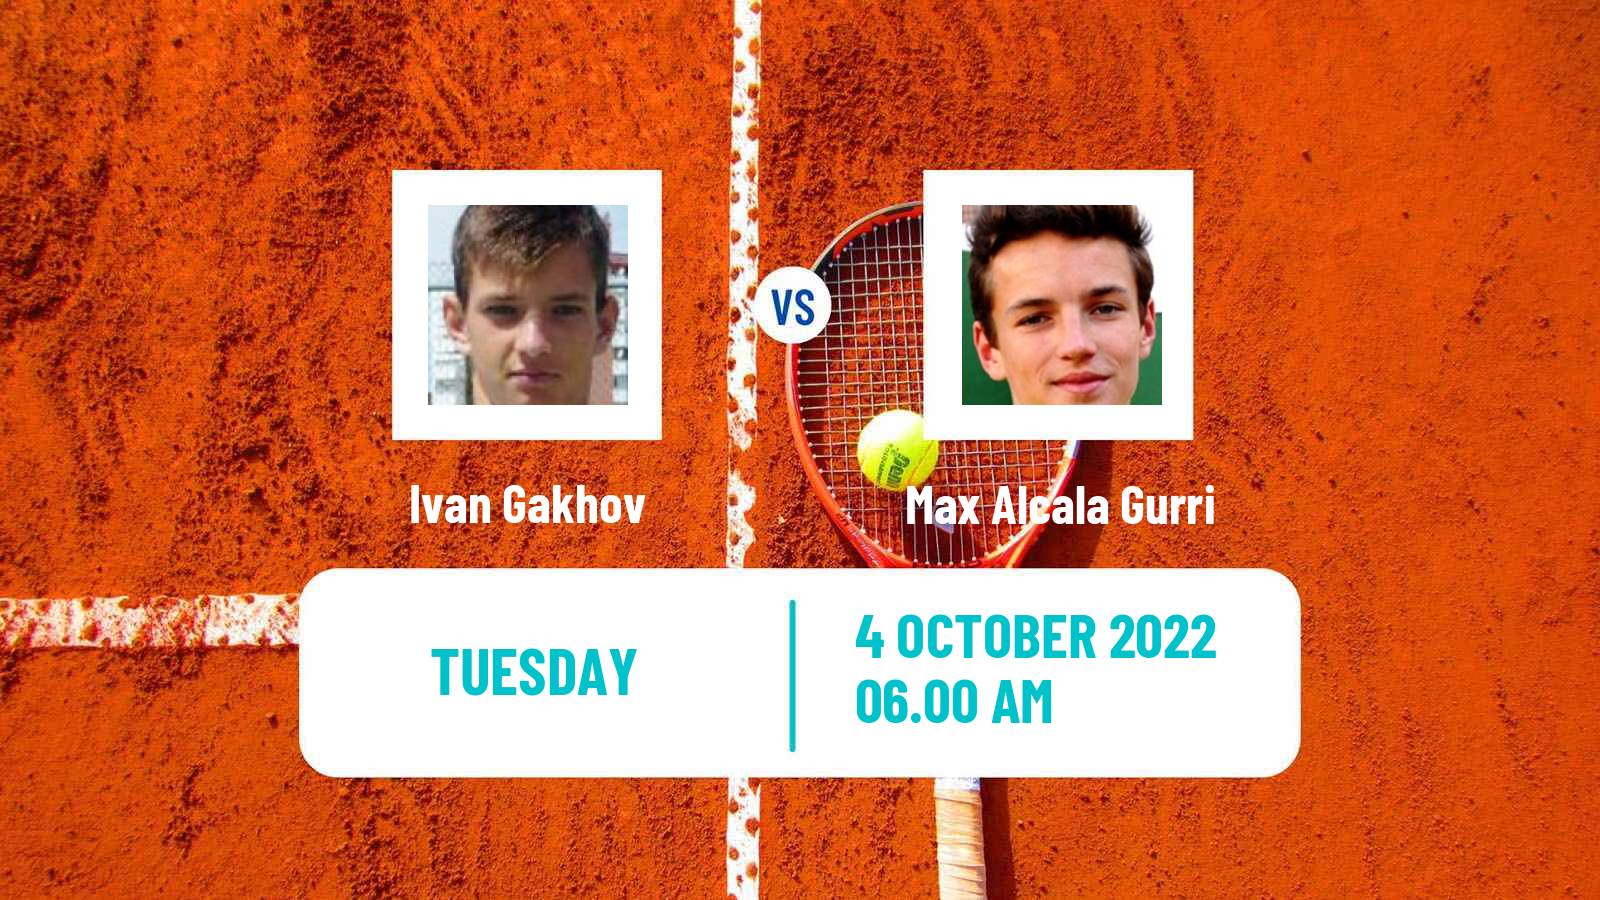 Tennis ITF Tournaments Ivan Gakhov - Max Alcala Gurri